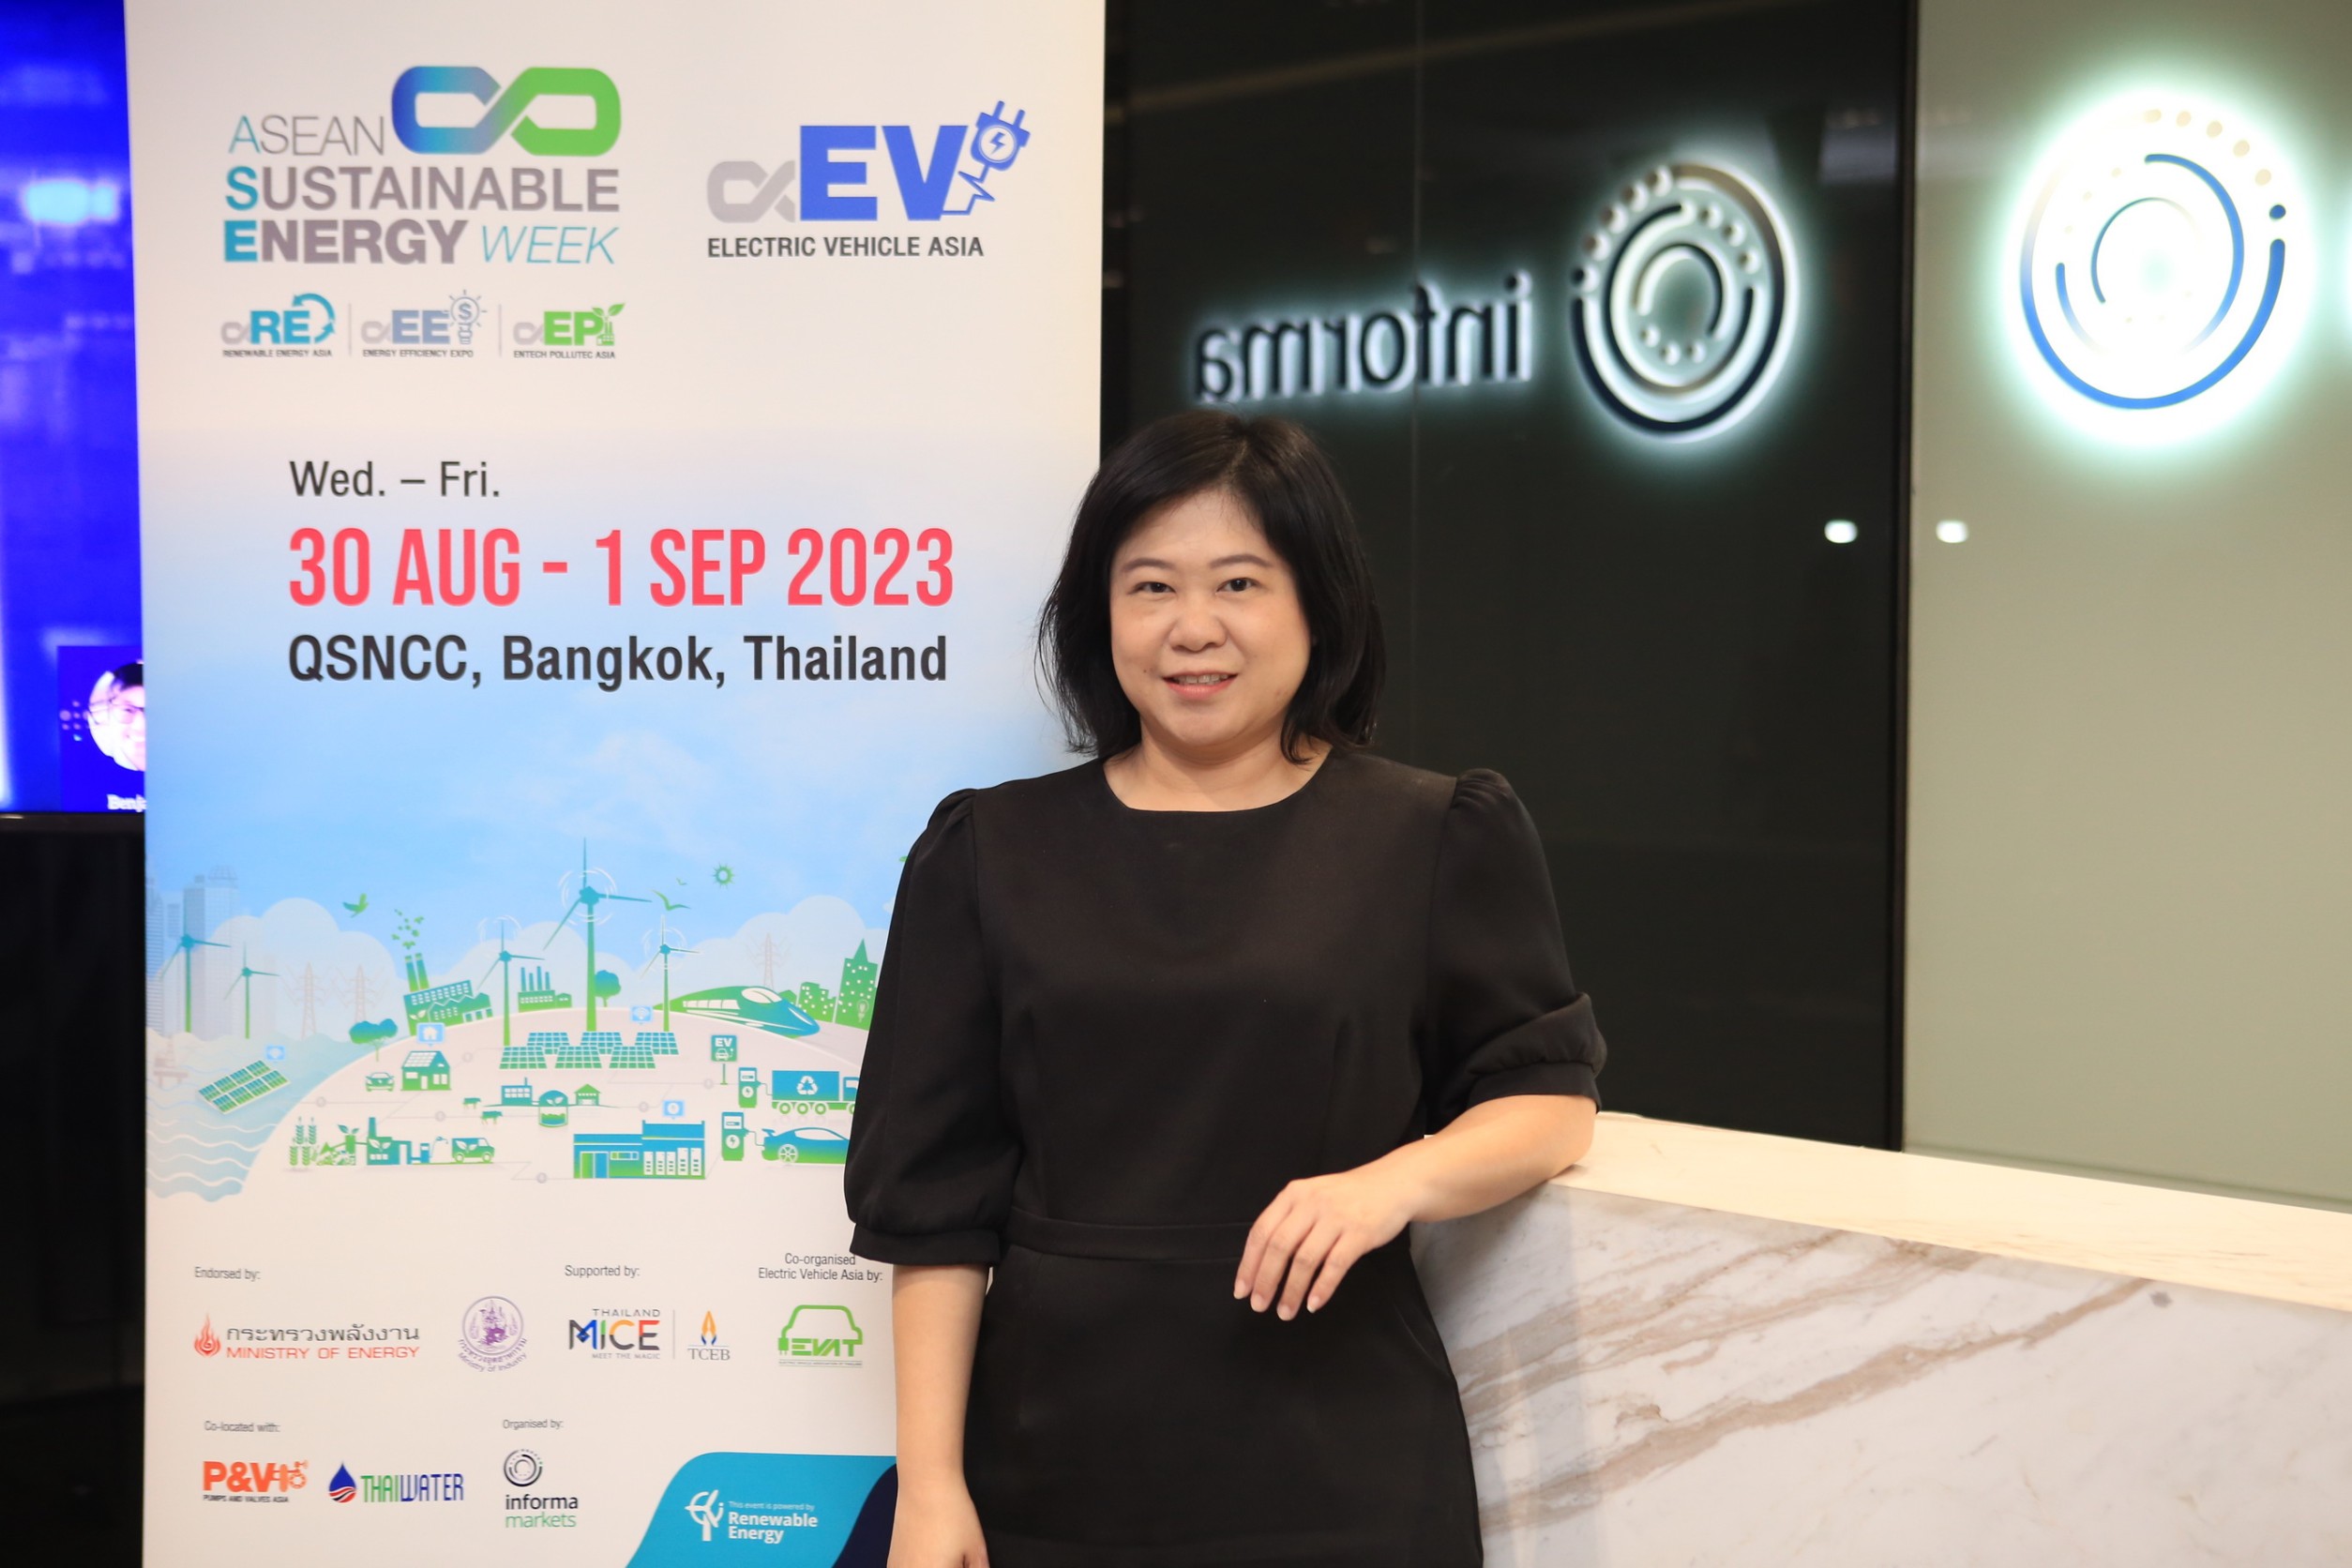 อินฟอร์มา มาร์เก็ตส์ จับมือภาครัฐและเอกชน จัดงาน Electric Vehicle Asia และ iEVTech 2023